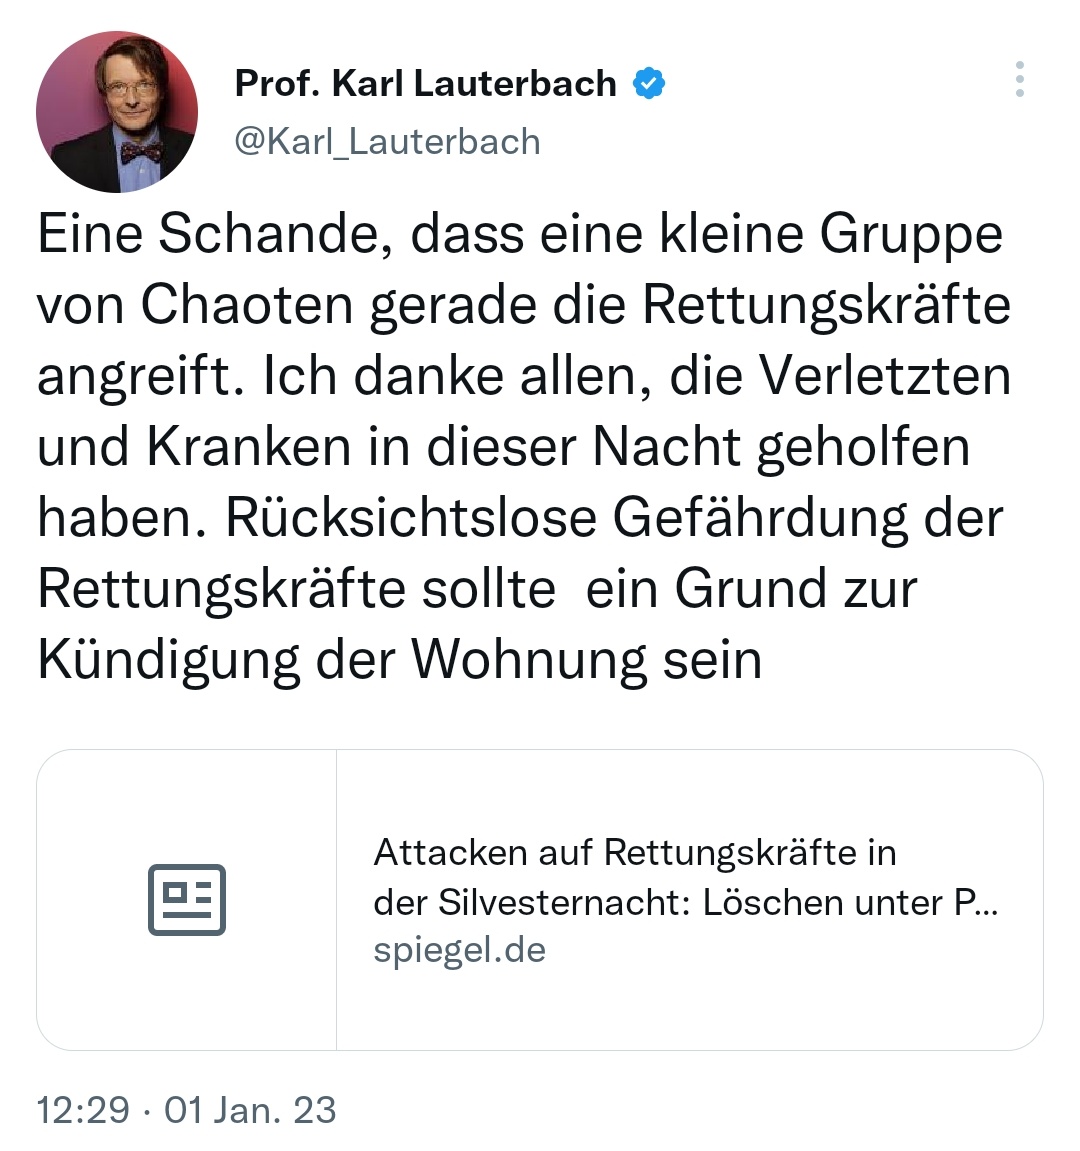 Der deutsche Gesundheitsminister hat seinen 1. Tweet im Jahr 2023 gelöscht.

Hier ist er nochmal zur Erinnerung: